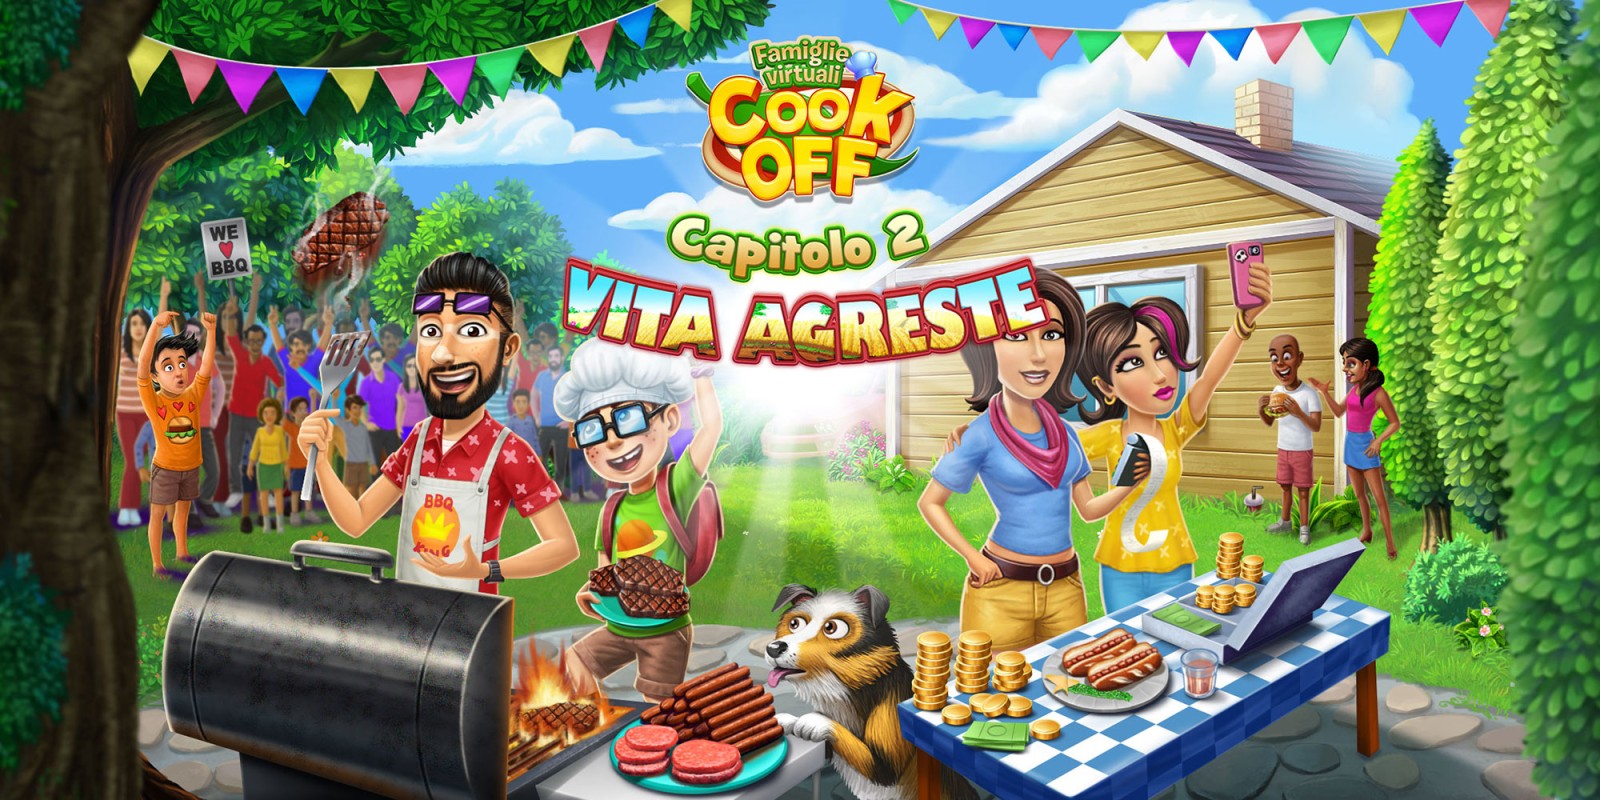 Famiglie Virtuali Cook Off: Vita Agreste - Capitolo 2